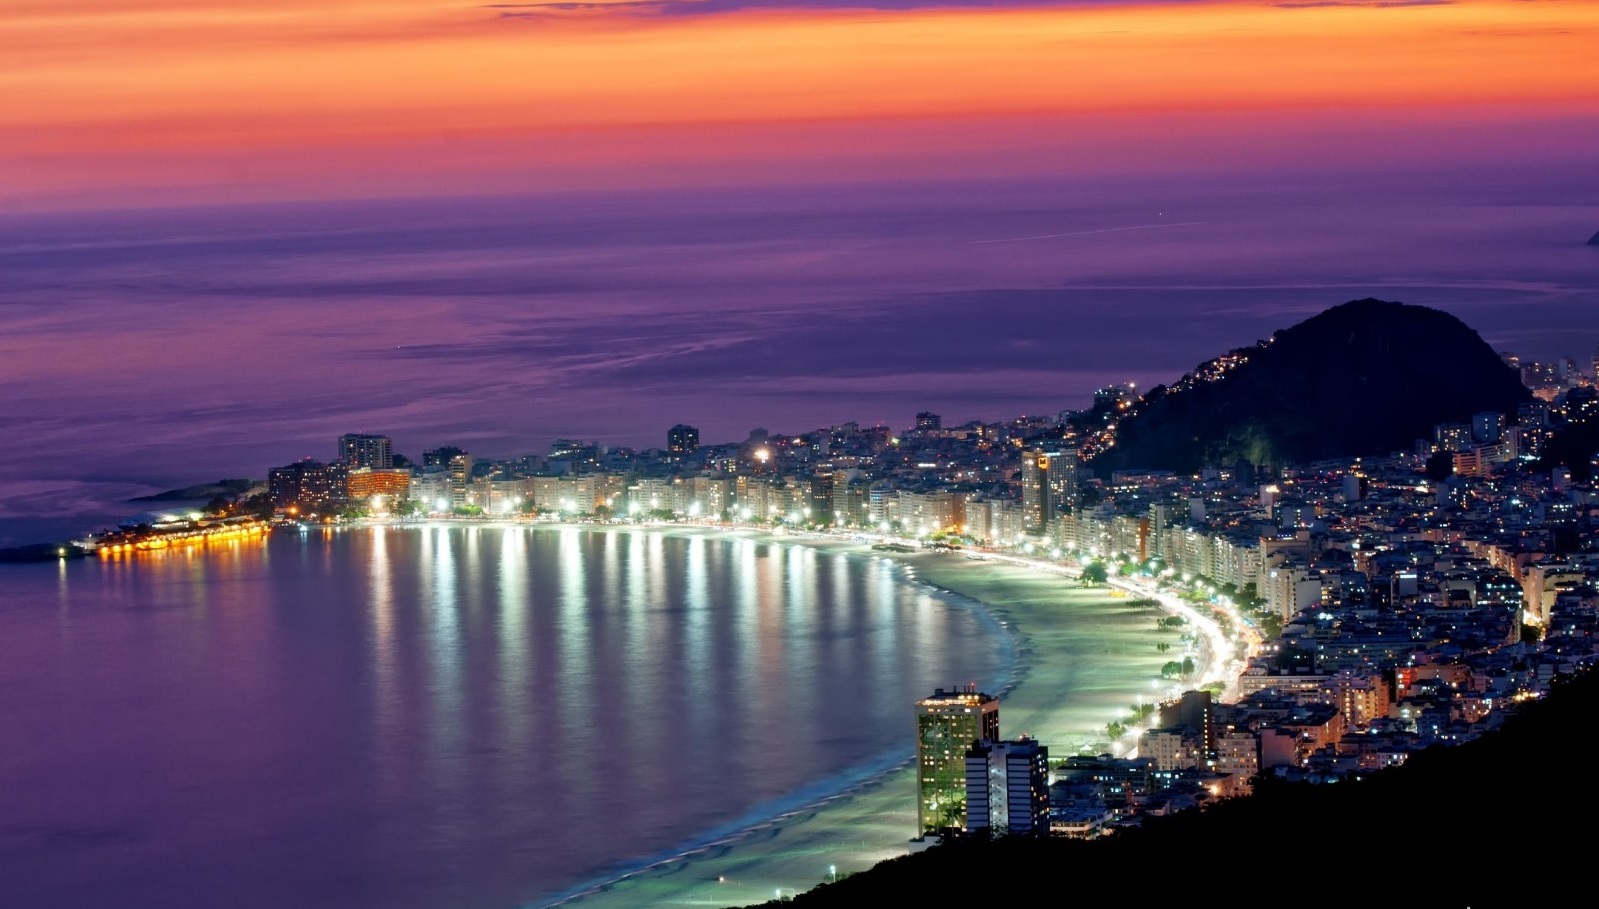 巴西民众享受夏日时光 里约海滨沙滩人满为患